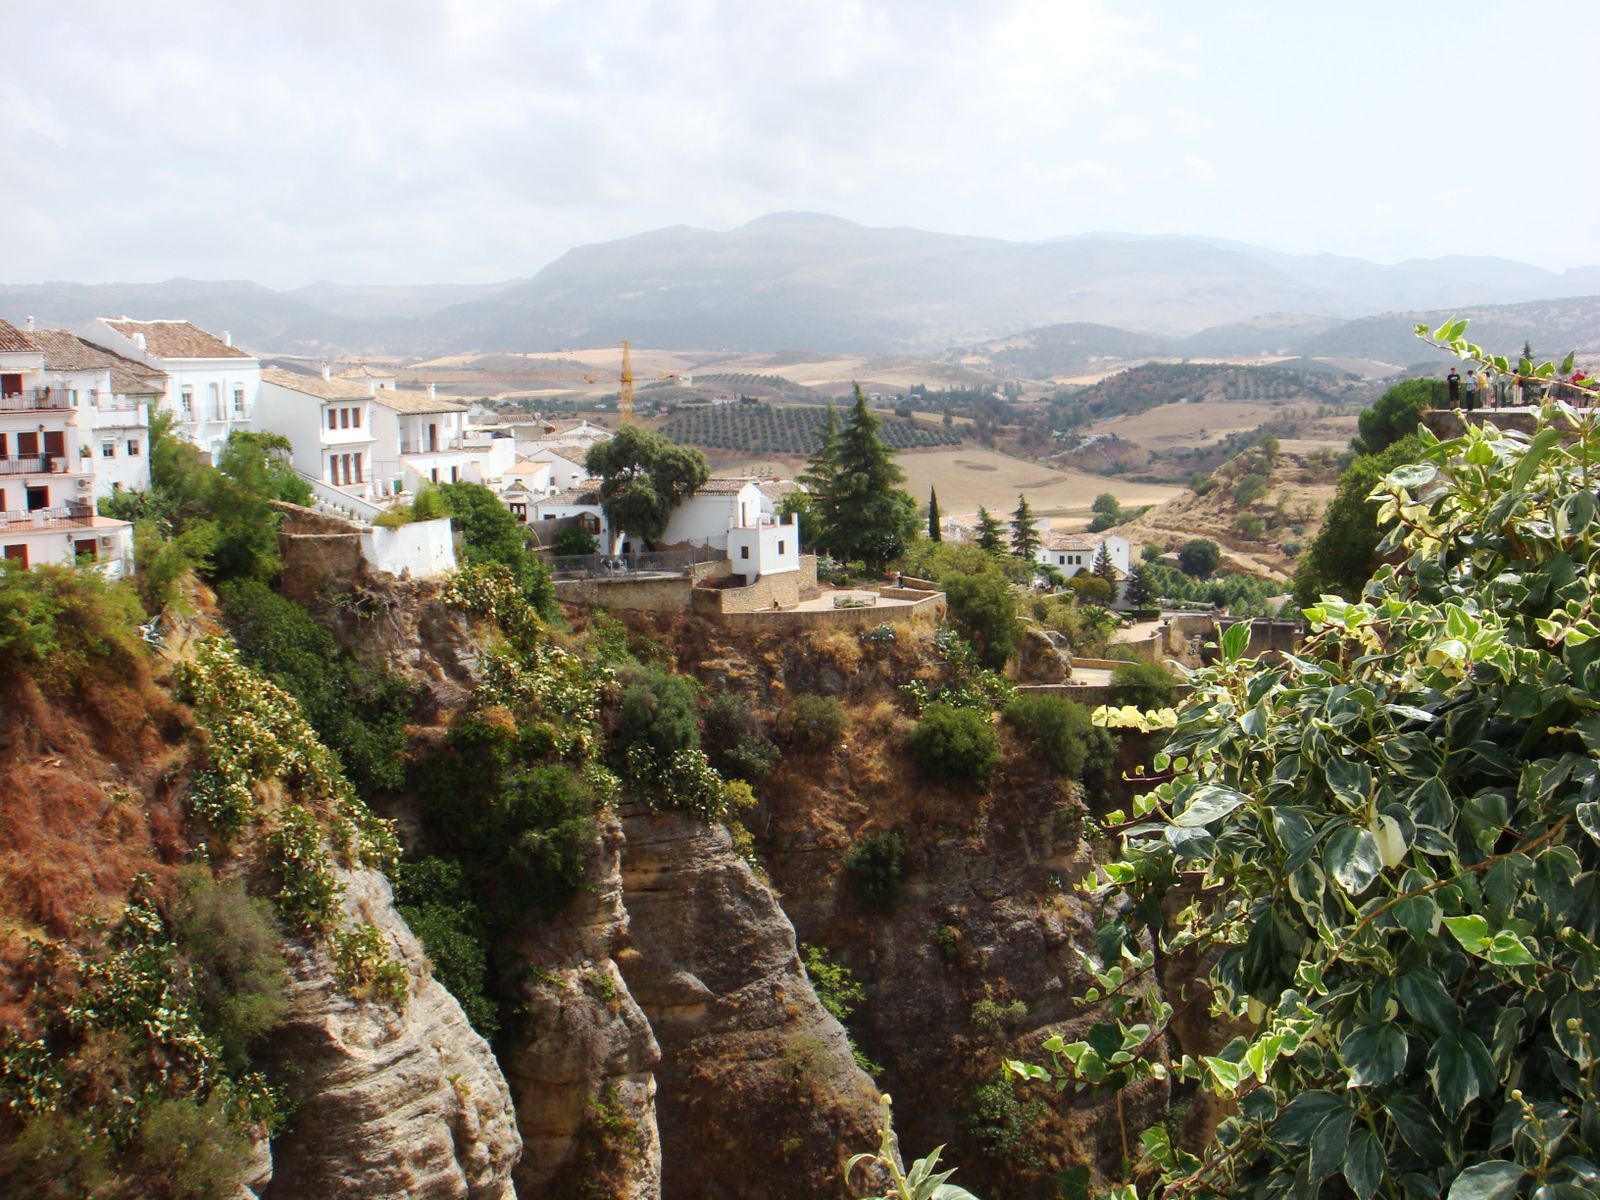 The Village of Granada